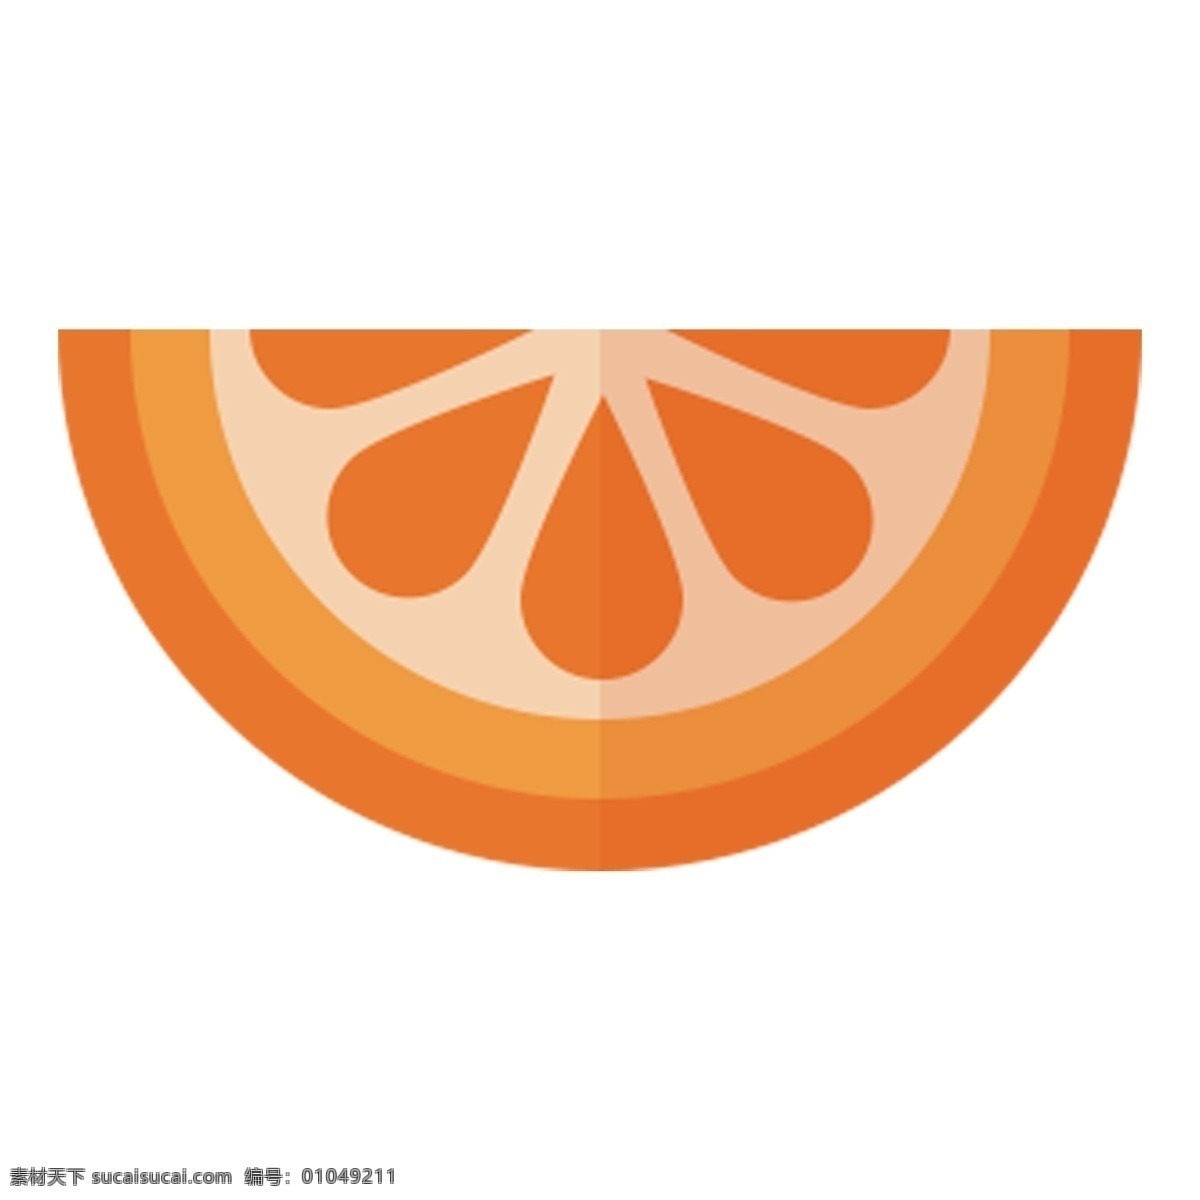 半 块 卡通 橙子 新鲜橙子 卡通橙子 手绘橙子 一半 扁平化 橙色 水果 酸酸甜甜 橙子png 半块橙子